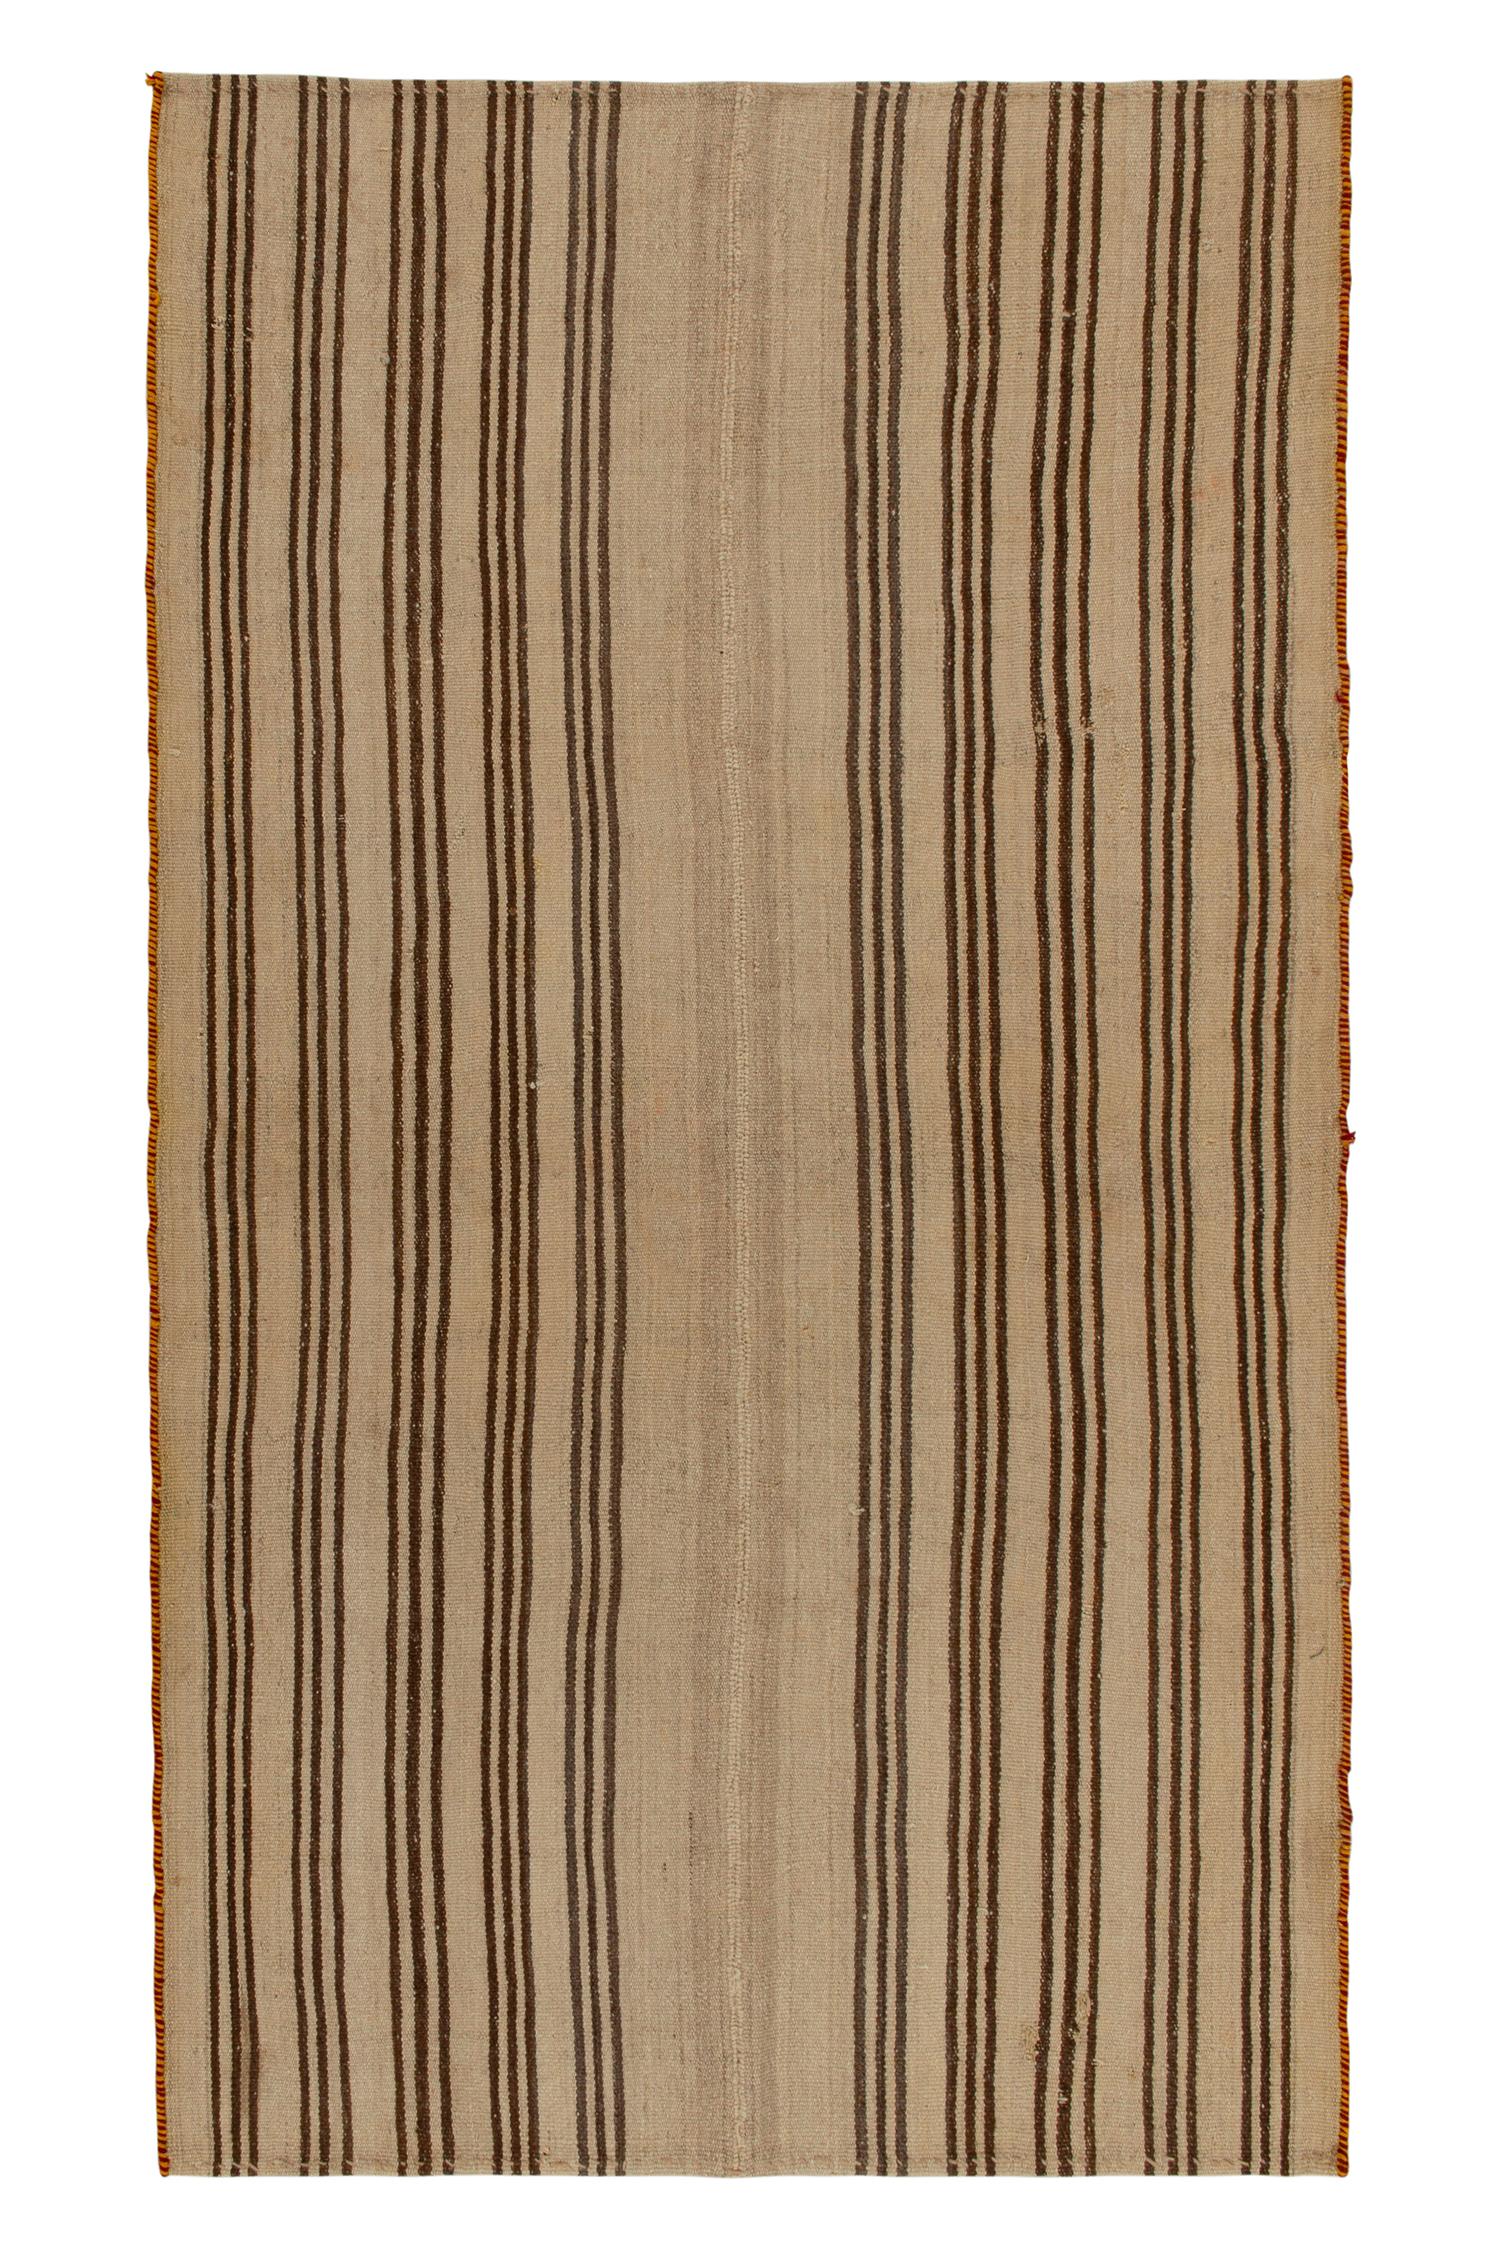 Vintage Kilim rug with Beige-Brown Stripe Patterns, Panel-Woven by Rug & Kilim